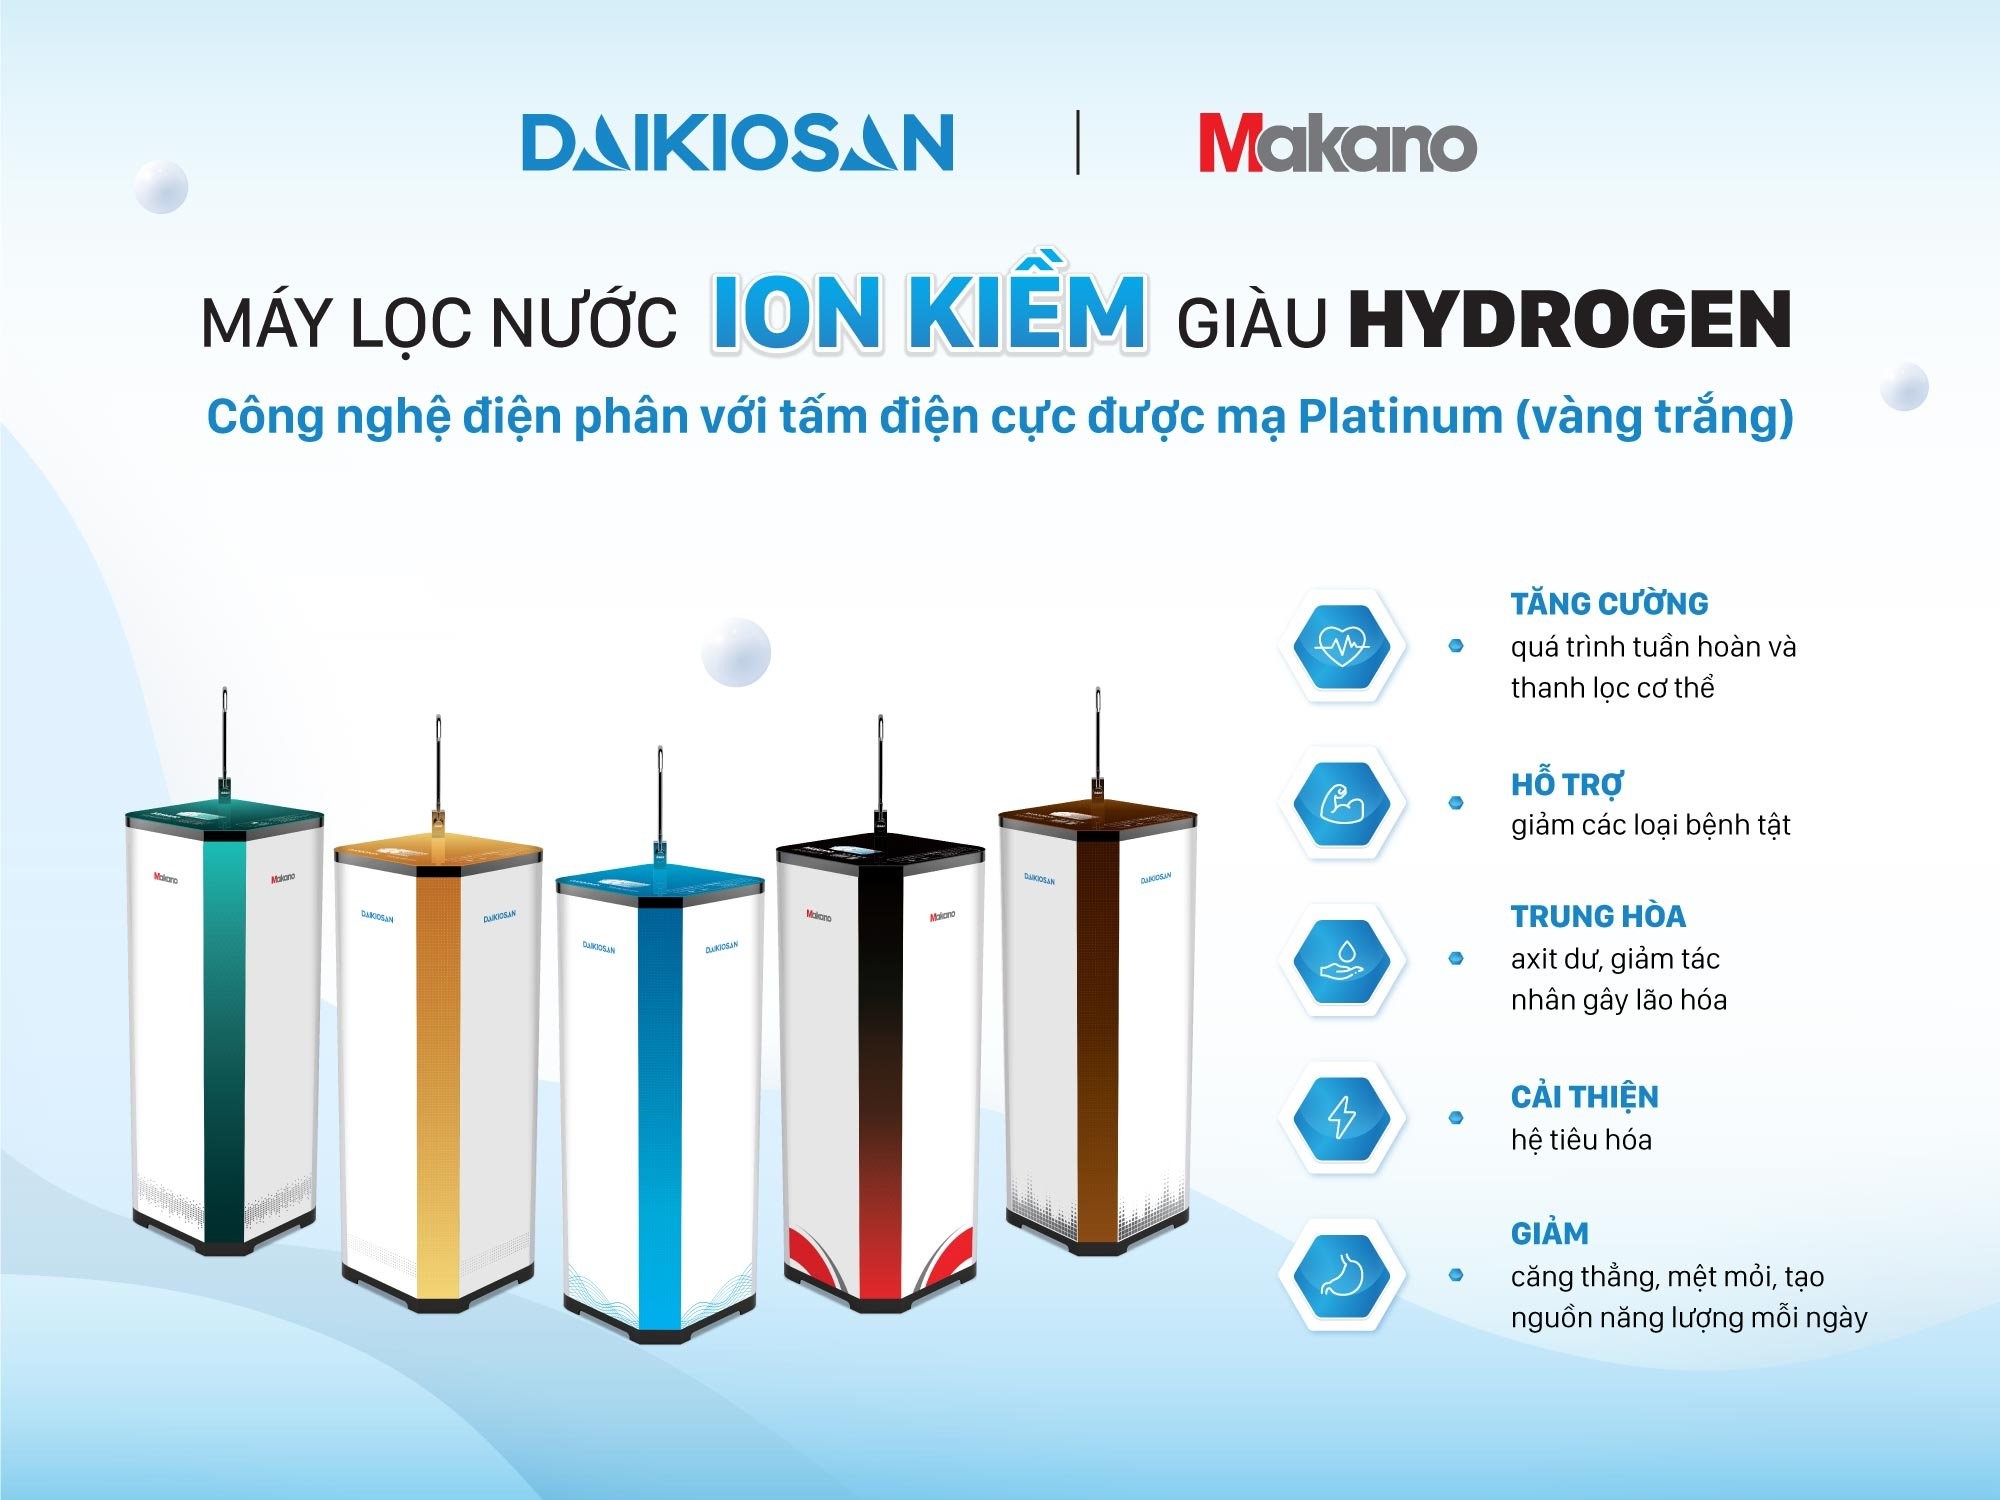 Uống quá nhiều nước ion kiềm giàu hydrogen có hại cho sức khỏe không?